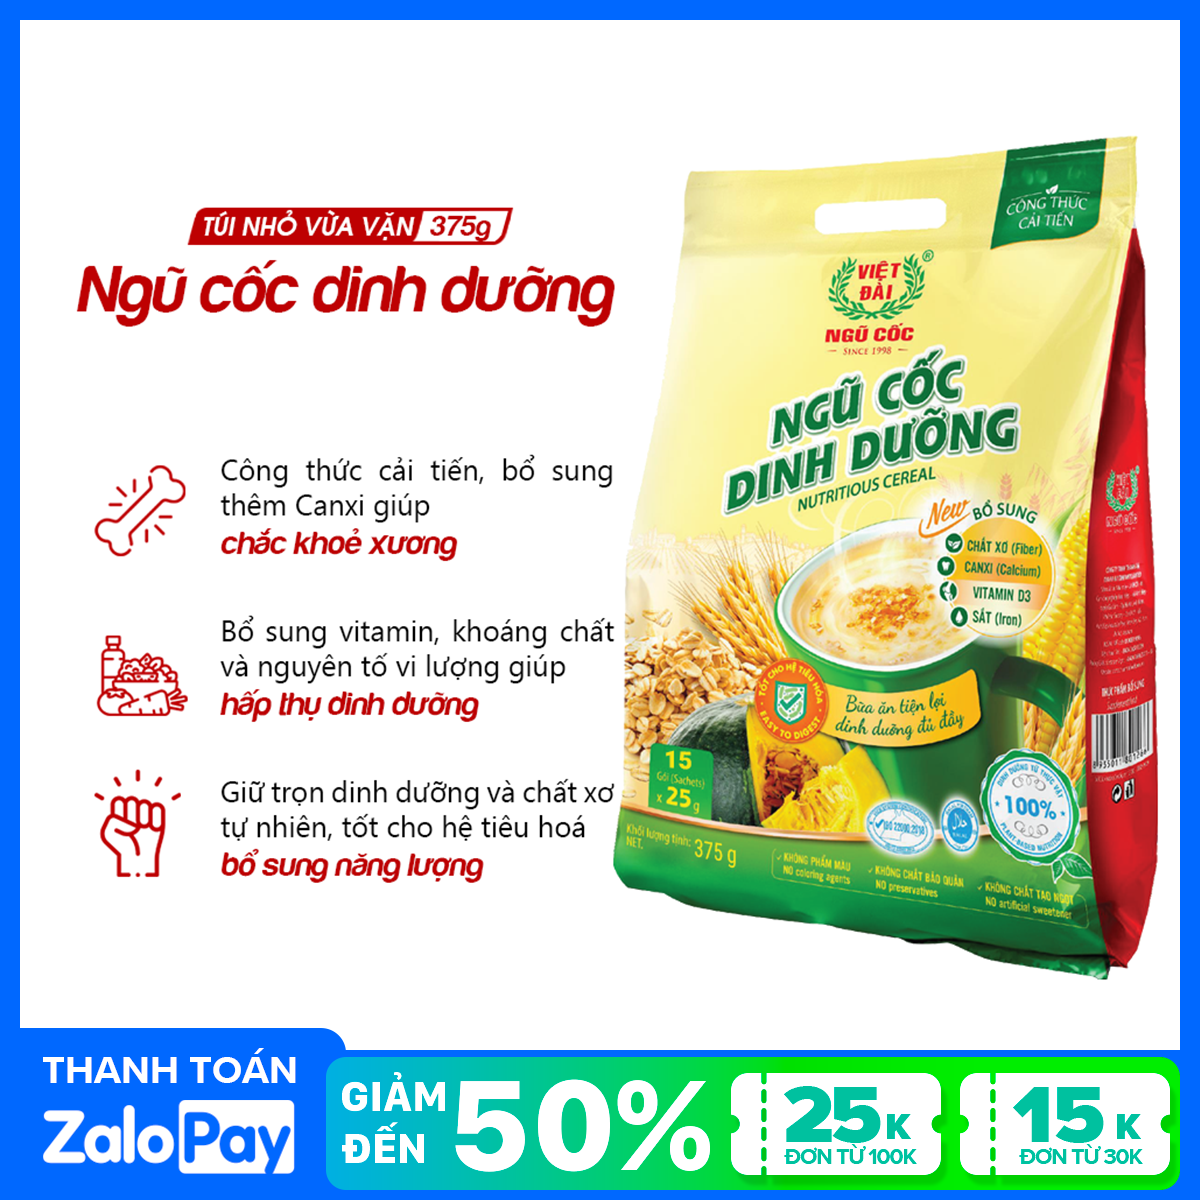 Bột ngũ cốc dinh dưỡng Việt Đài túi 375g